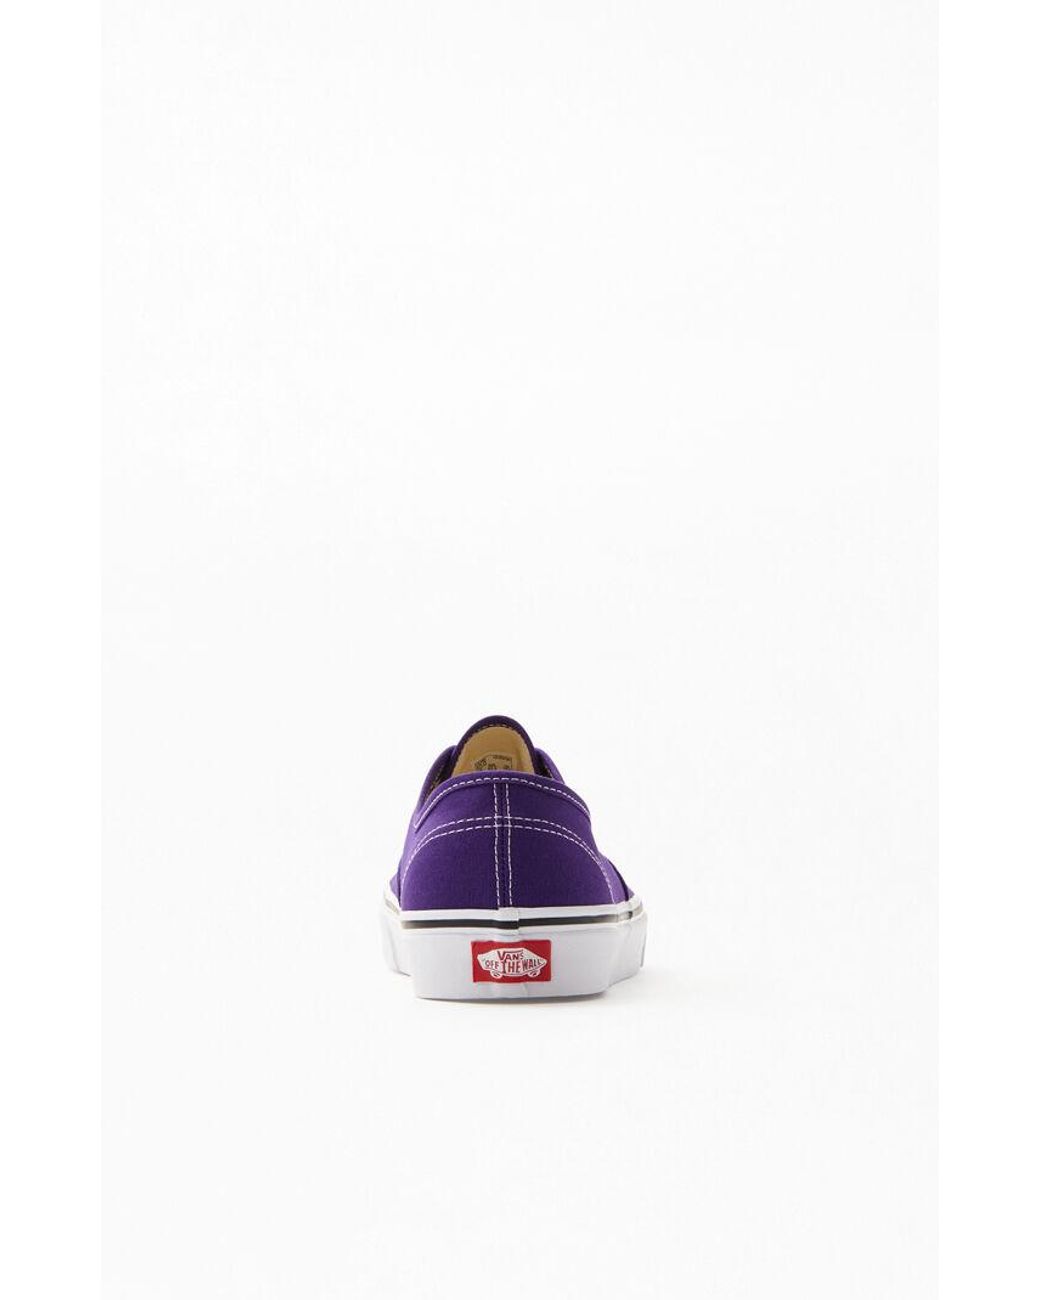 Vans Rubber Purple Authentic Shoes for Men | Lyst